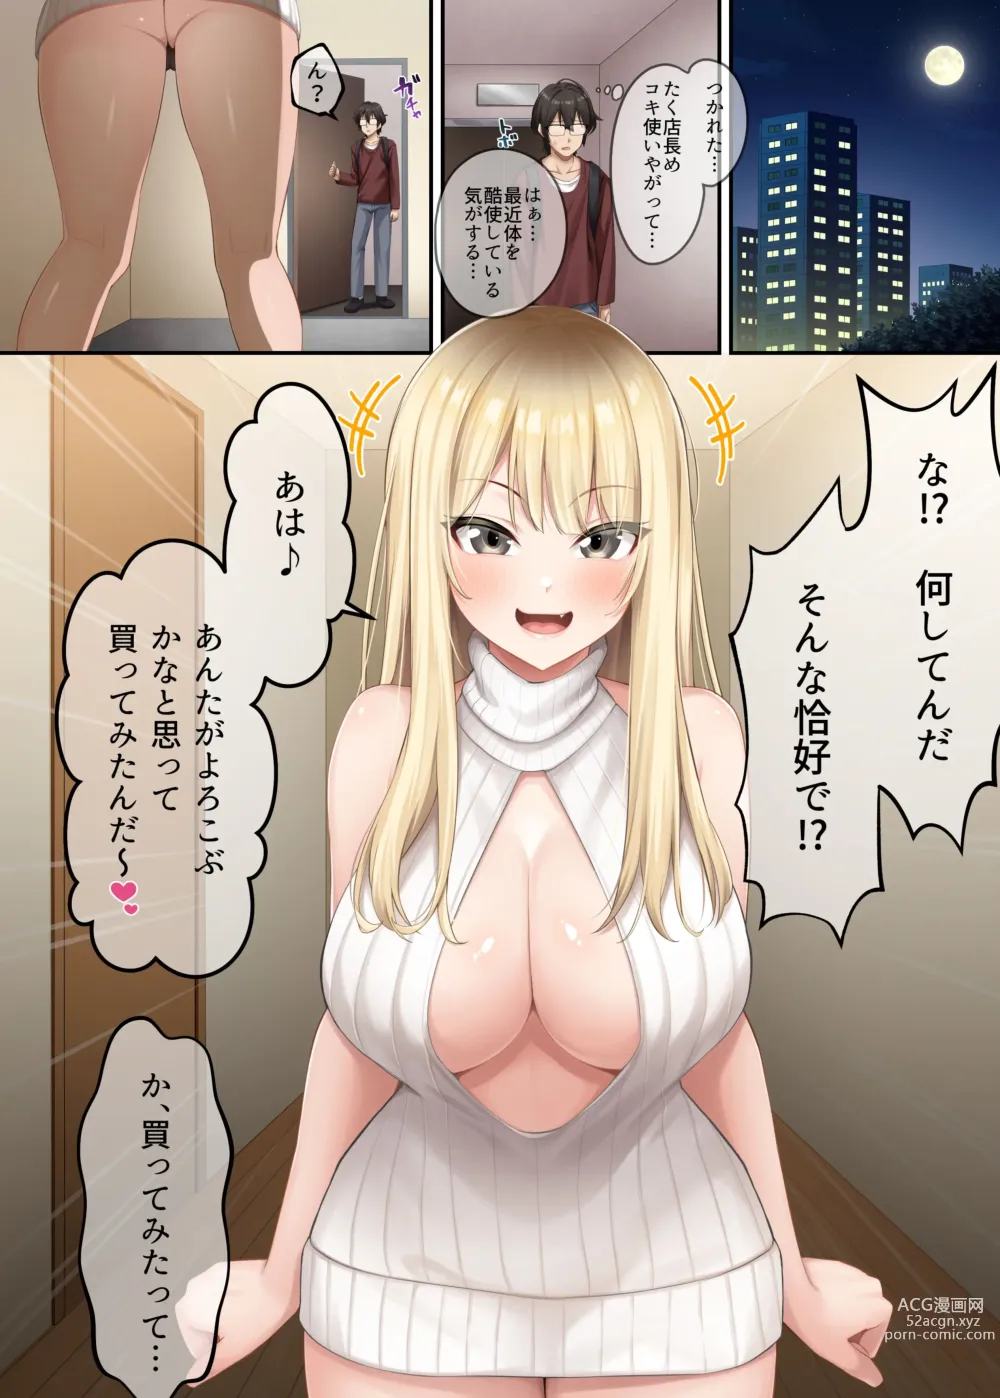 Page 8 of doujinshi 家庭教師として居候したはずが、エロいギャル達とセックスばかりしています。2